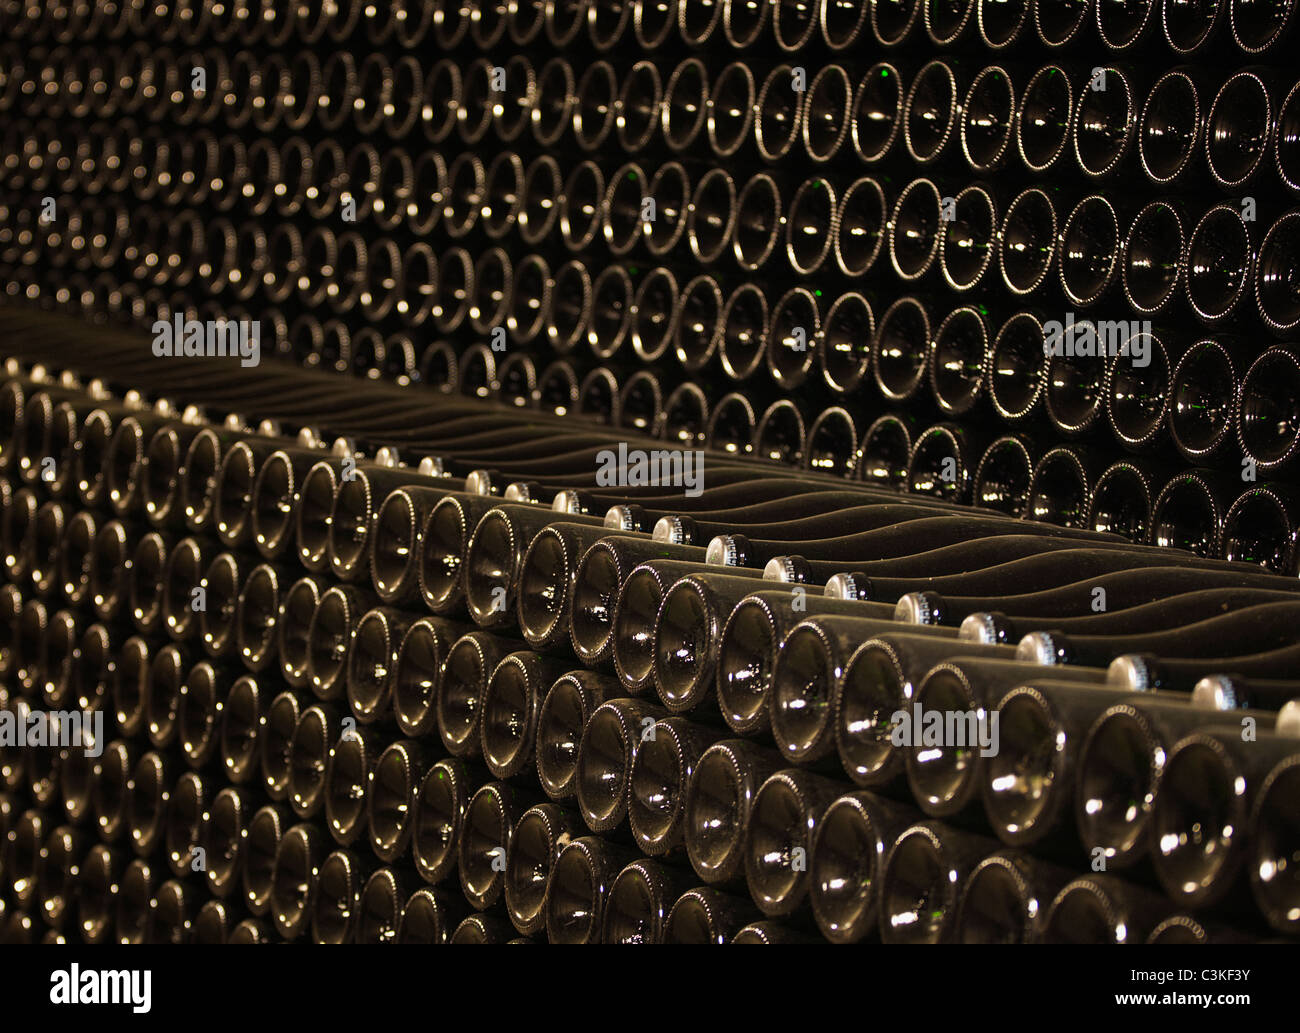 Wine bottles in cellar, (full frame) Stock Photo